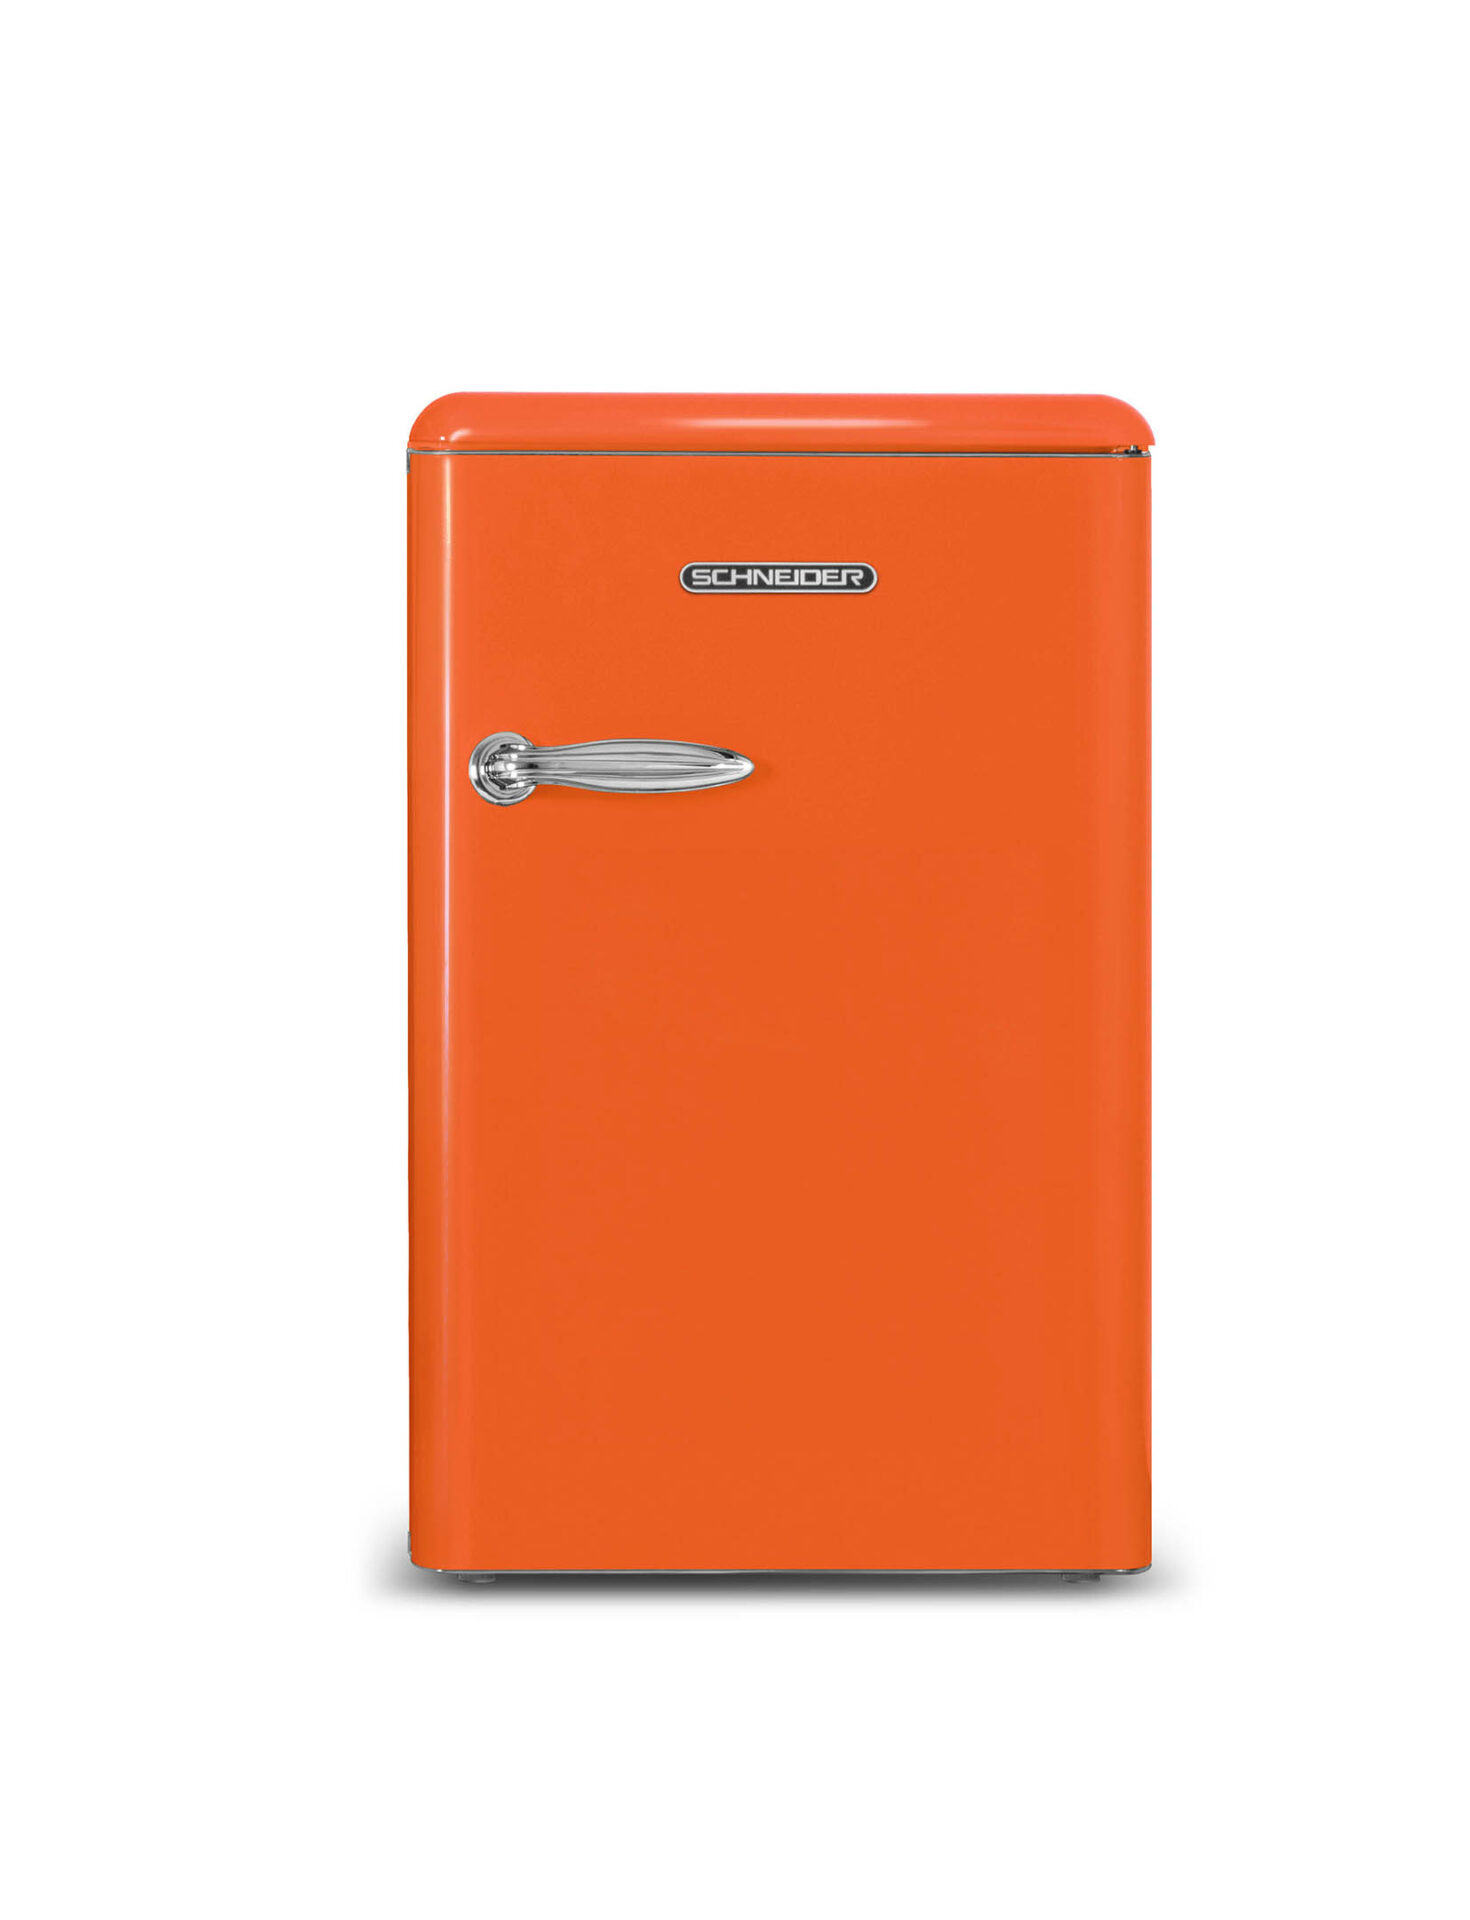 Réfrigérateur top SCHNEIDER SCHNSCTT115VACA